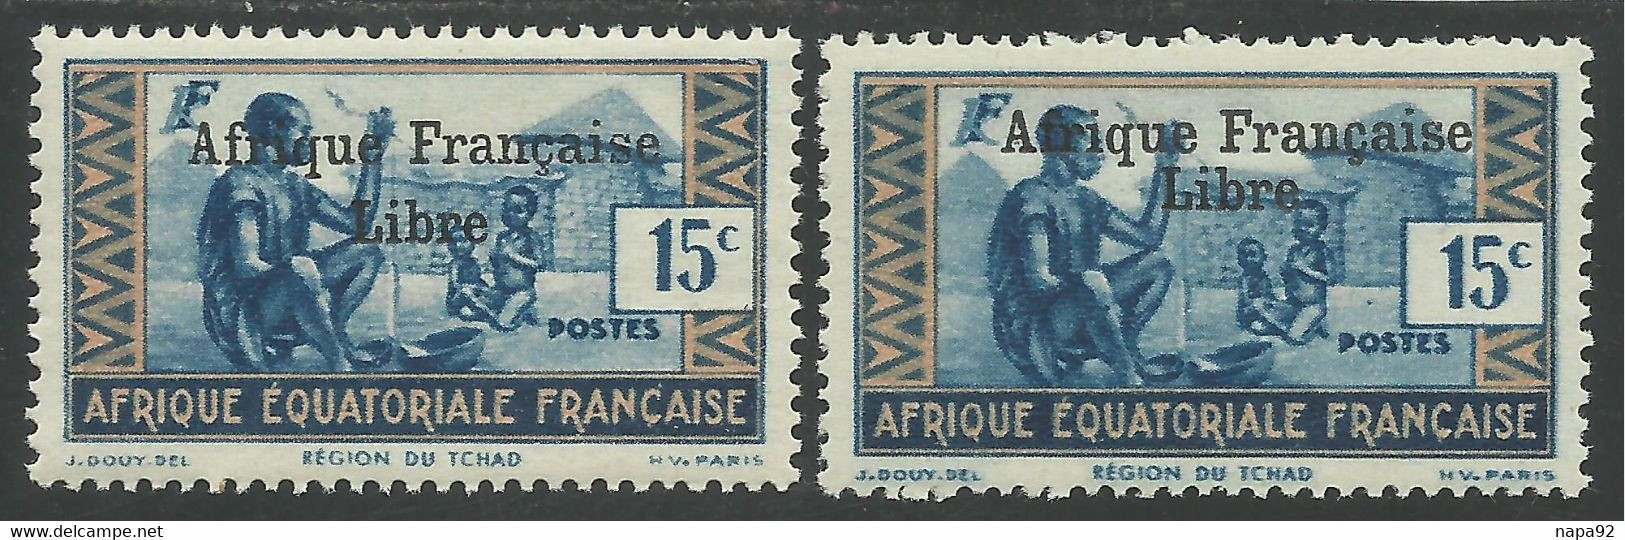 AFRIQUE EQUATORIALE FRANCAISE - AEF - A.E.F. - 1941 - YT 161** - 2ème TIRAGE - Ungebraucht